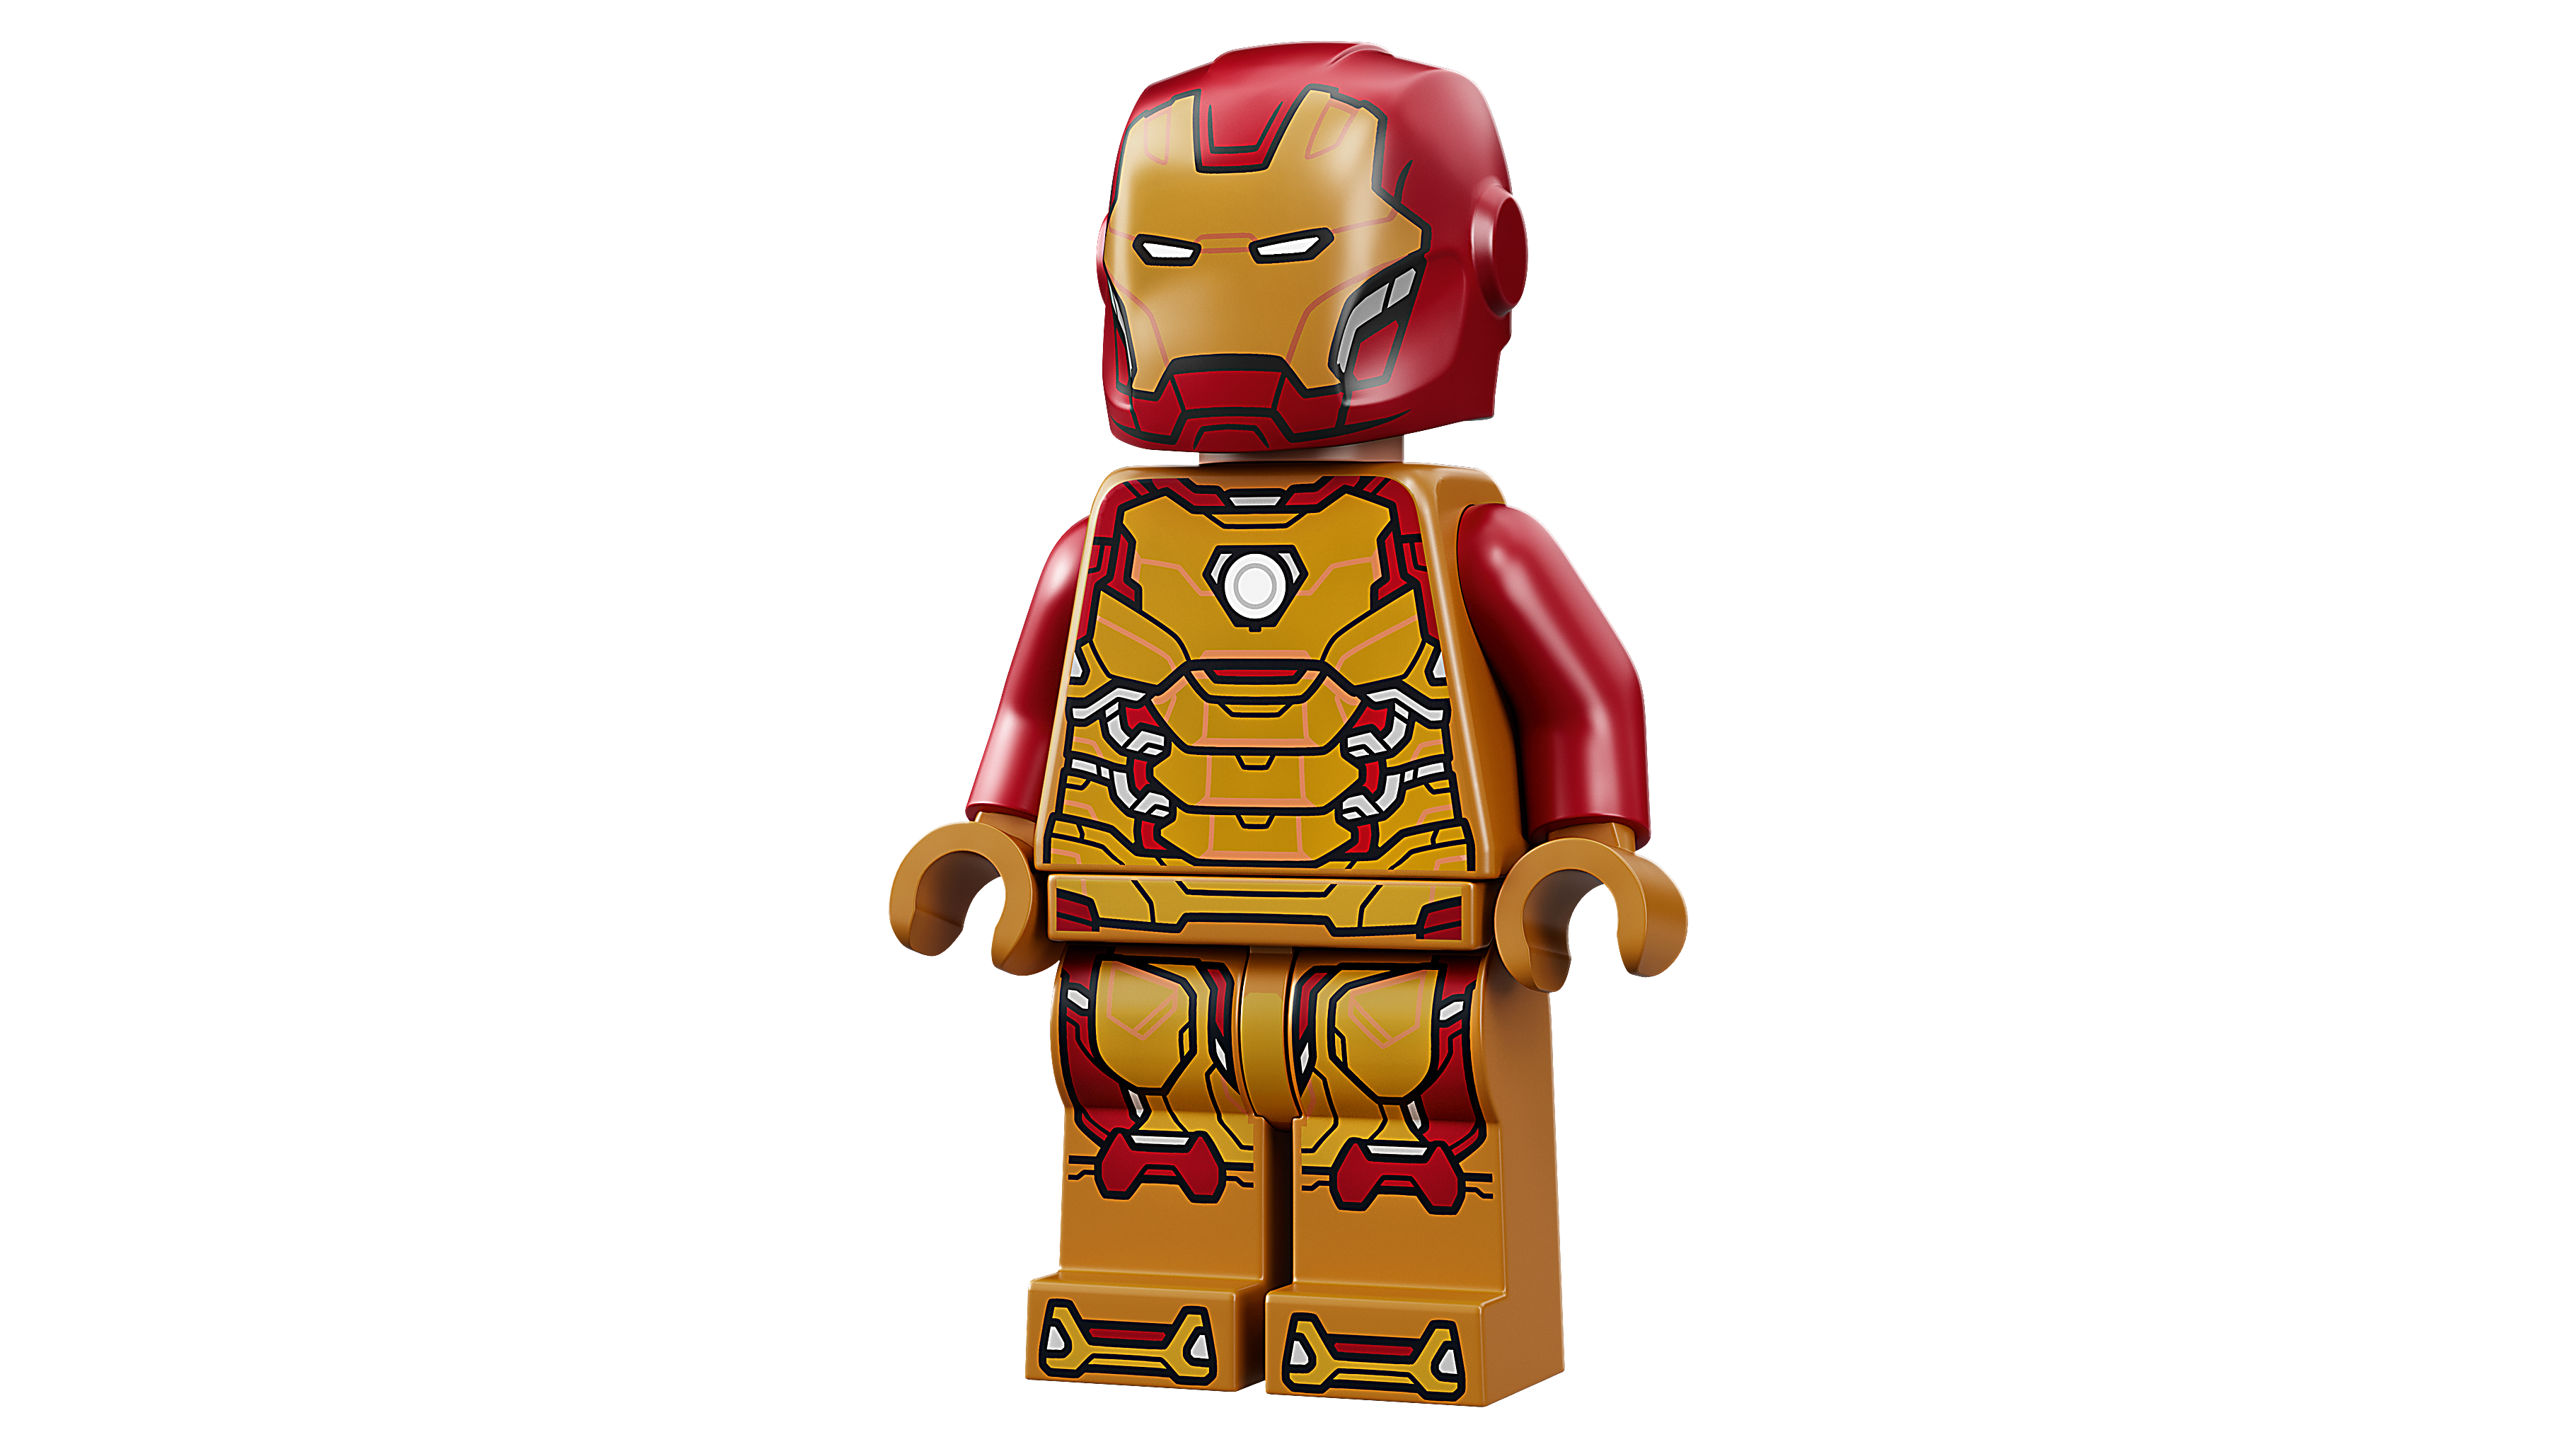 Iron Man robotrustning 76203 | Marvel | Official LEGO® Shop SE